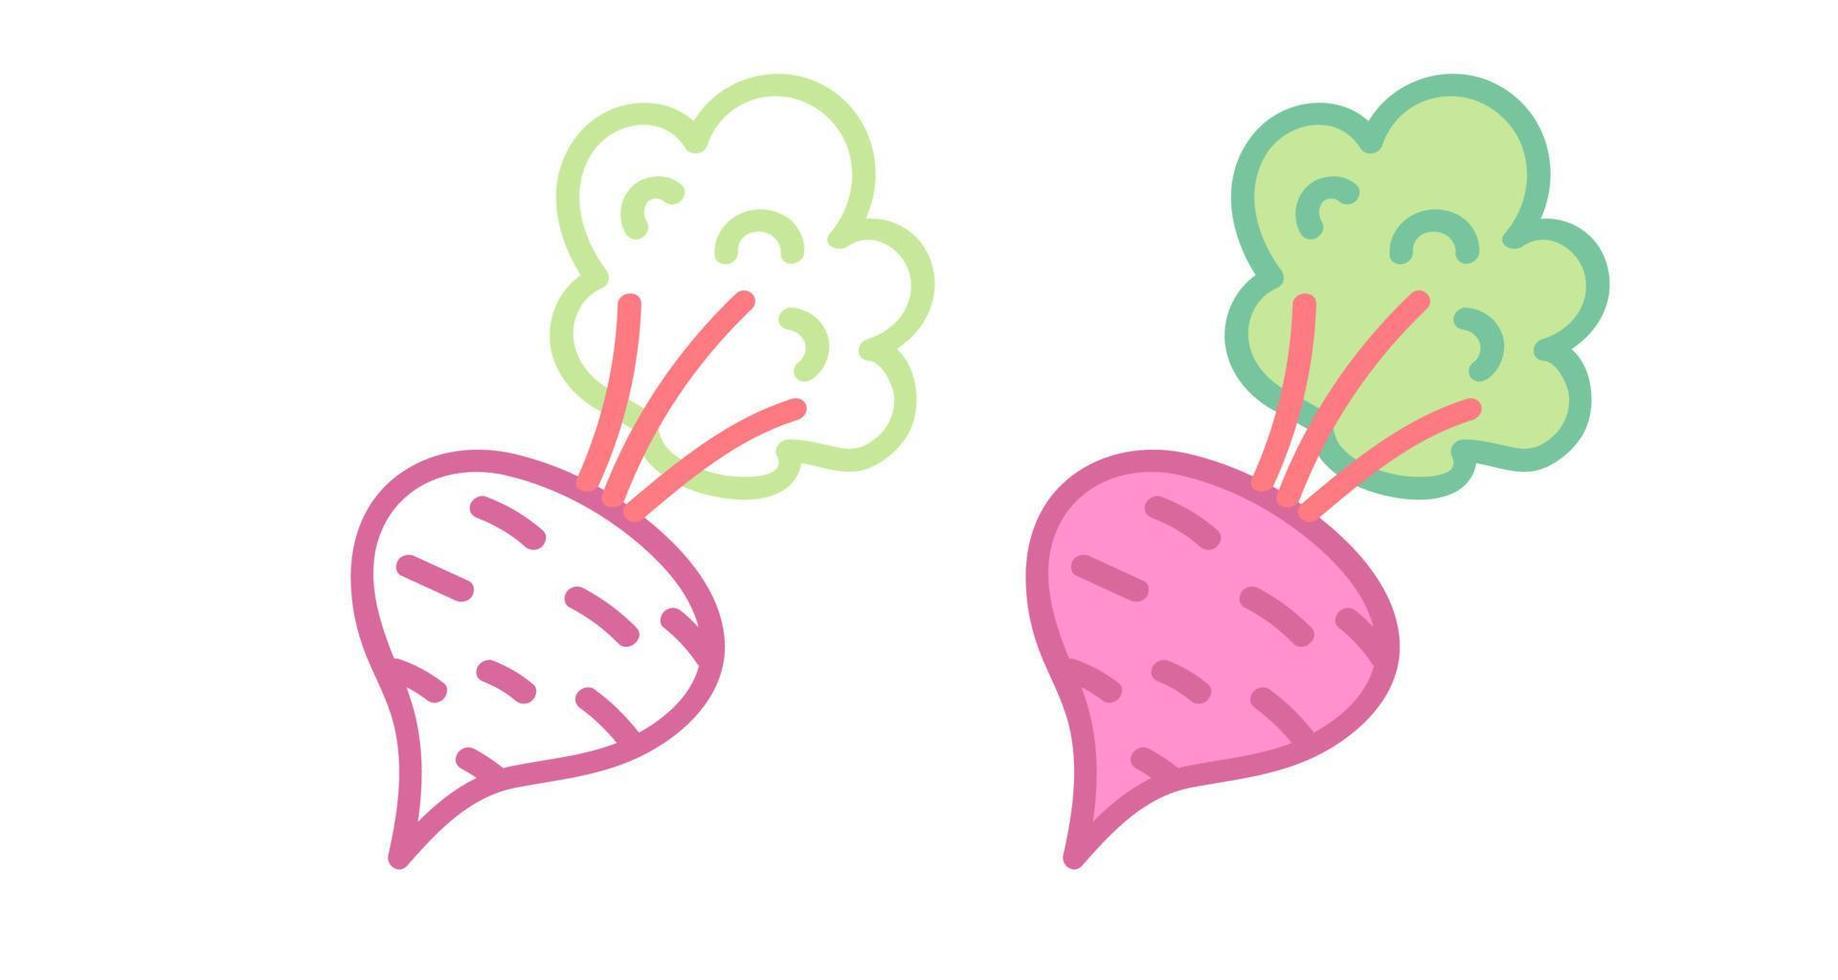 vektor uppsättning ikoner av beta. vektor illustration av beta. hand teckning grönsaker.